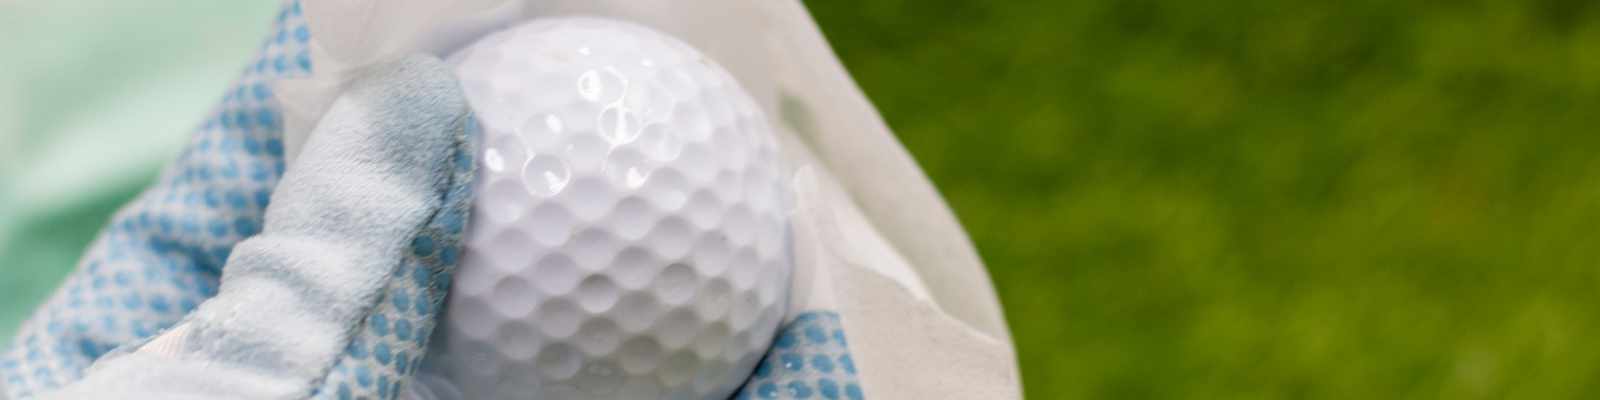 Gereinigter Golfball (photo by Thaninee Chuensomchit / Shutterstock.com)